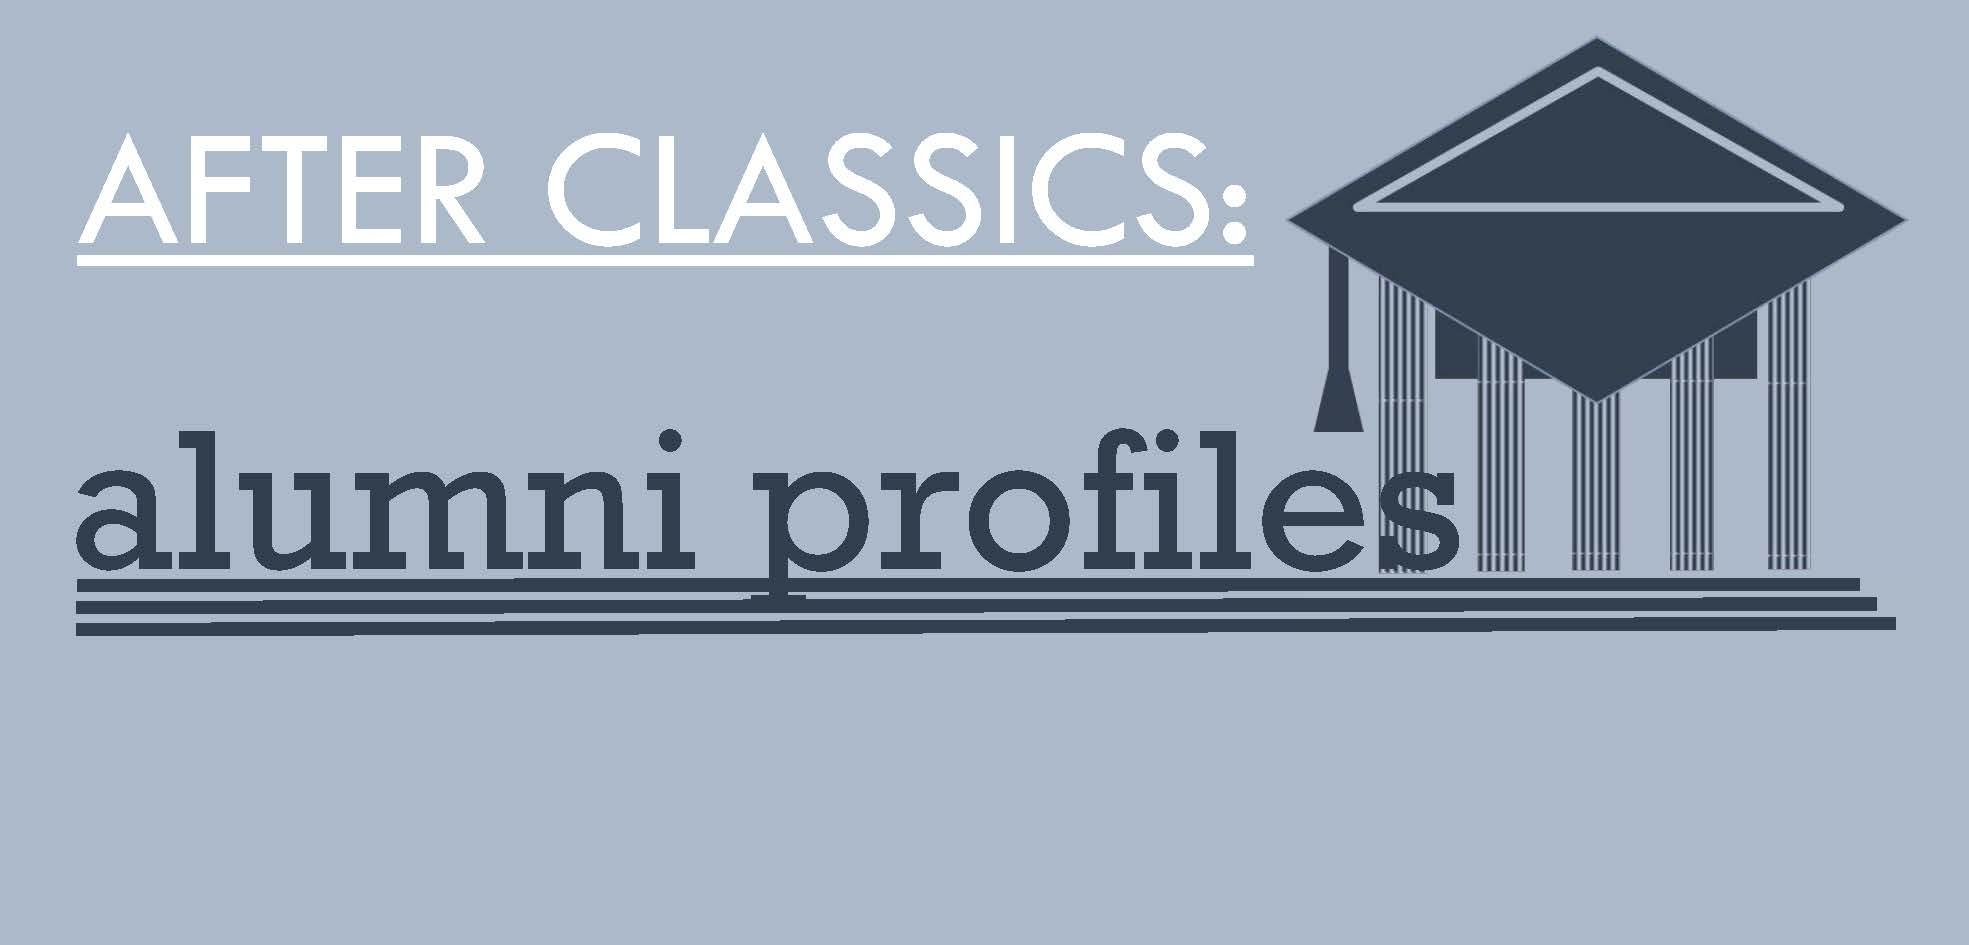 After Classics: alumni profiles